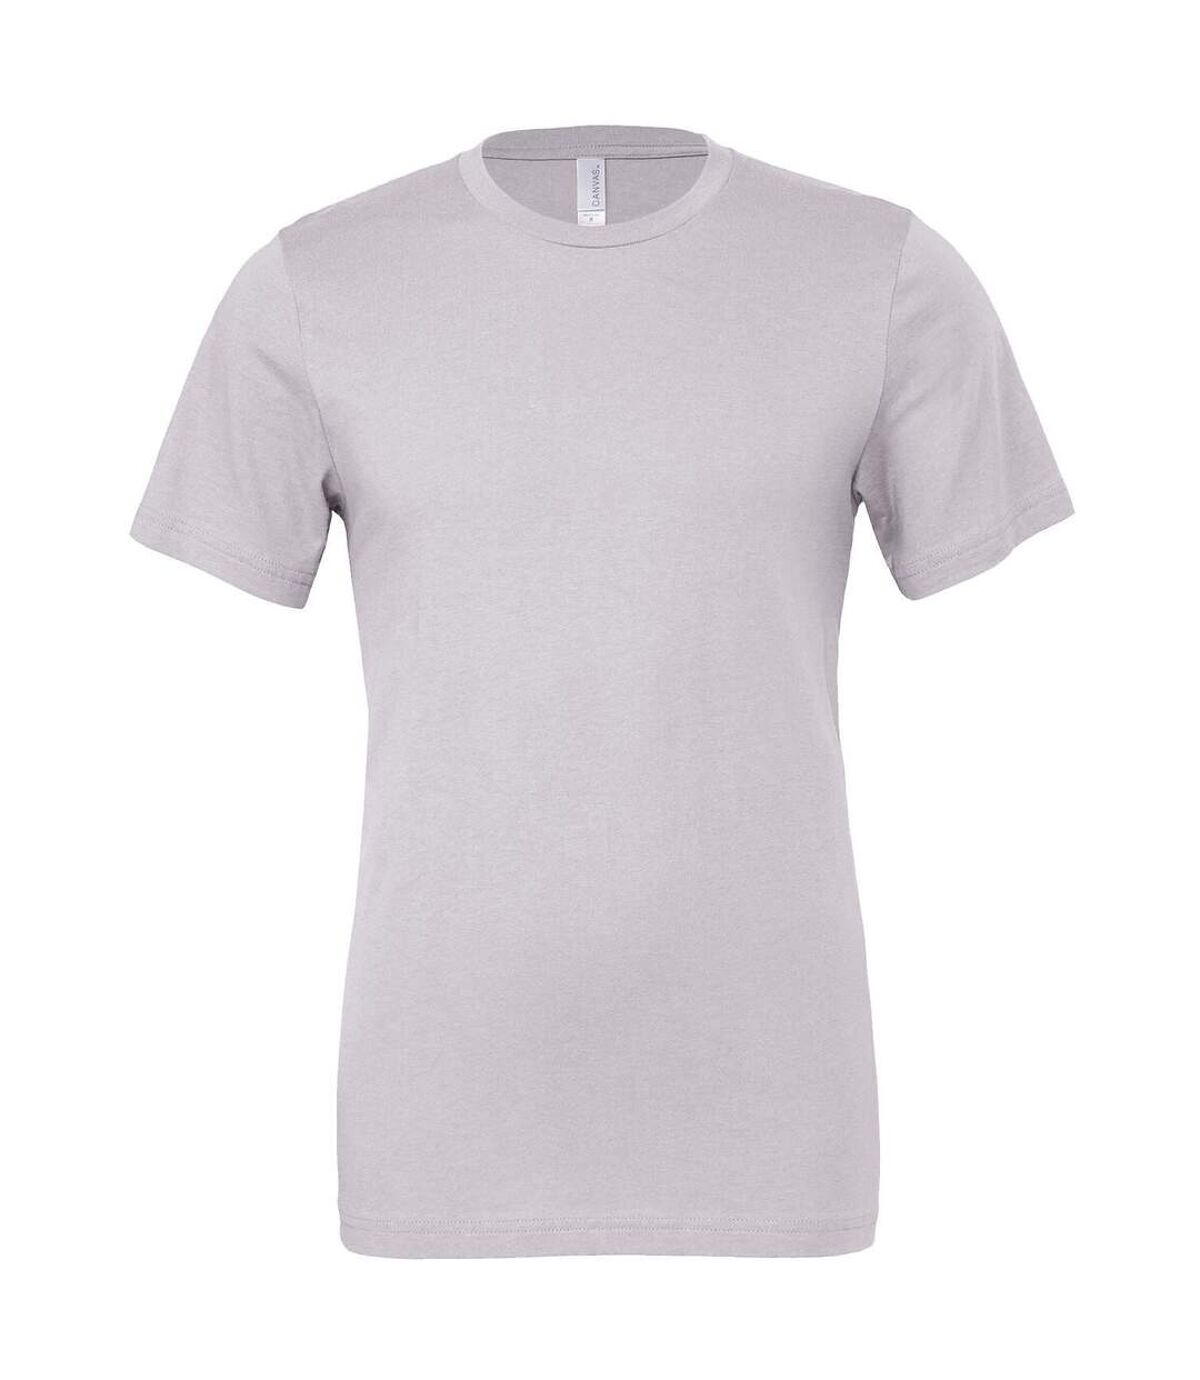 B & C - T-shirt à col rond - Mixte (Lavande pâle) - UTRW5722